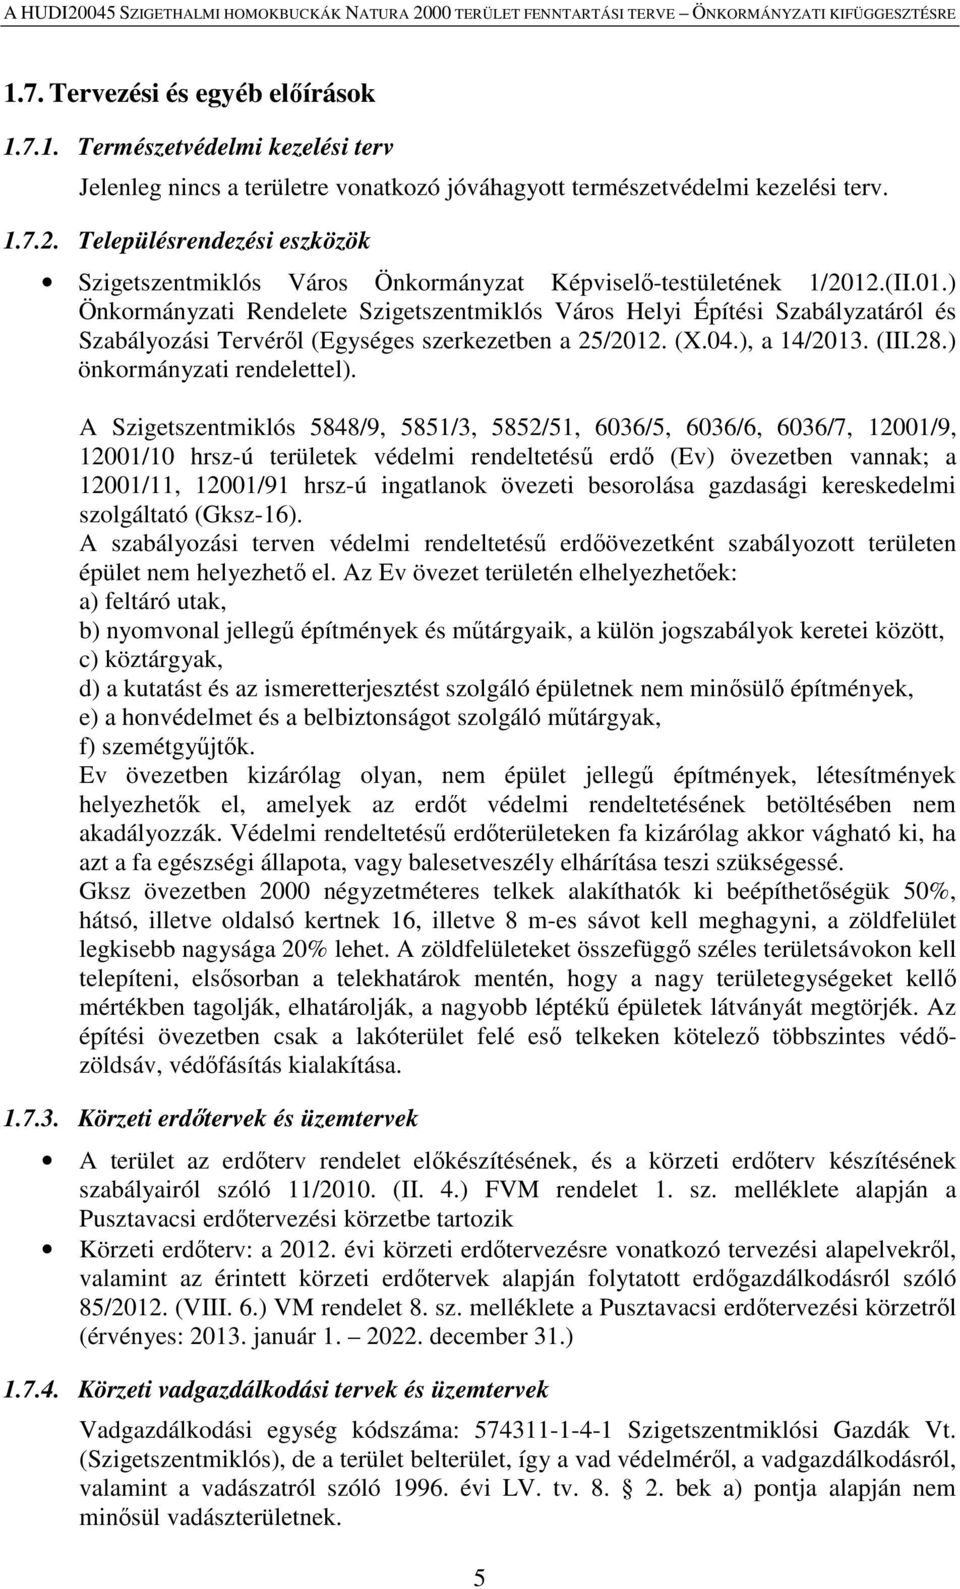 .(II.01.) Önkormányzati Rendelete Szigetszentmiklós Város Helyi Építési Szabályzatáról és Szabályozási Tervéről (Egységes szerkezetben a 25/2012. (X.04.), a 14/2013. (III.28.